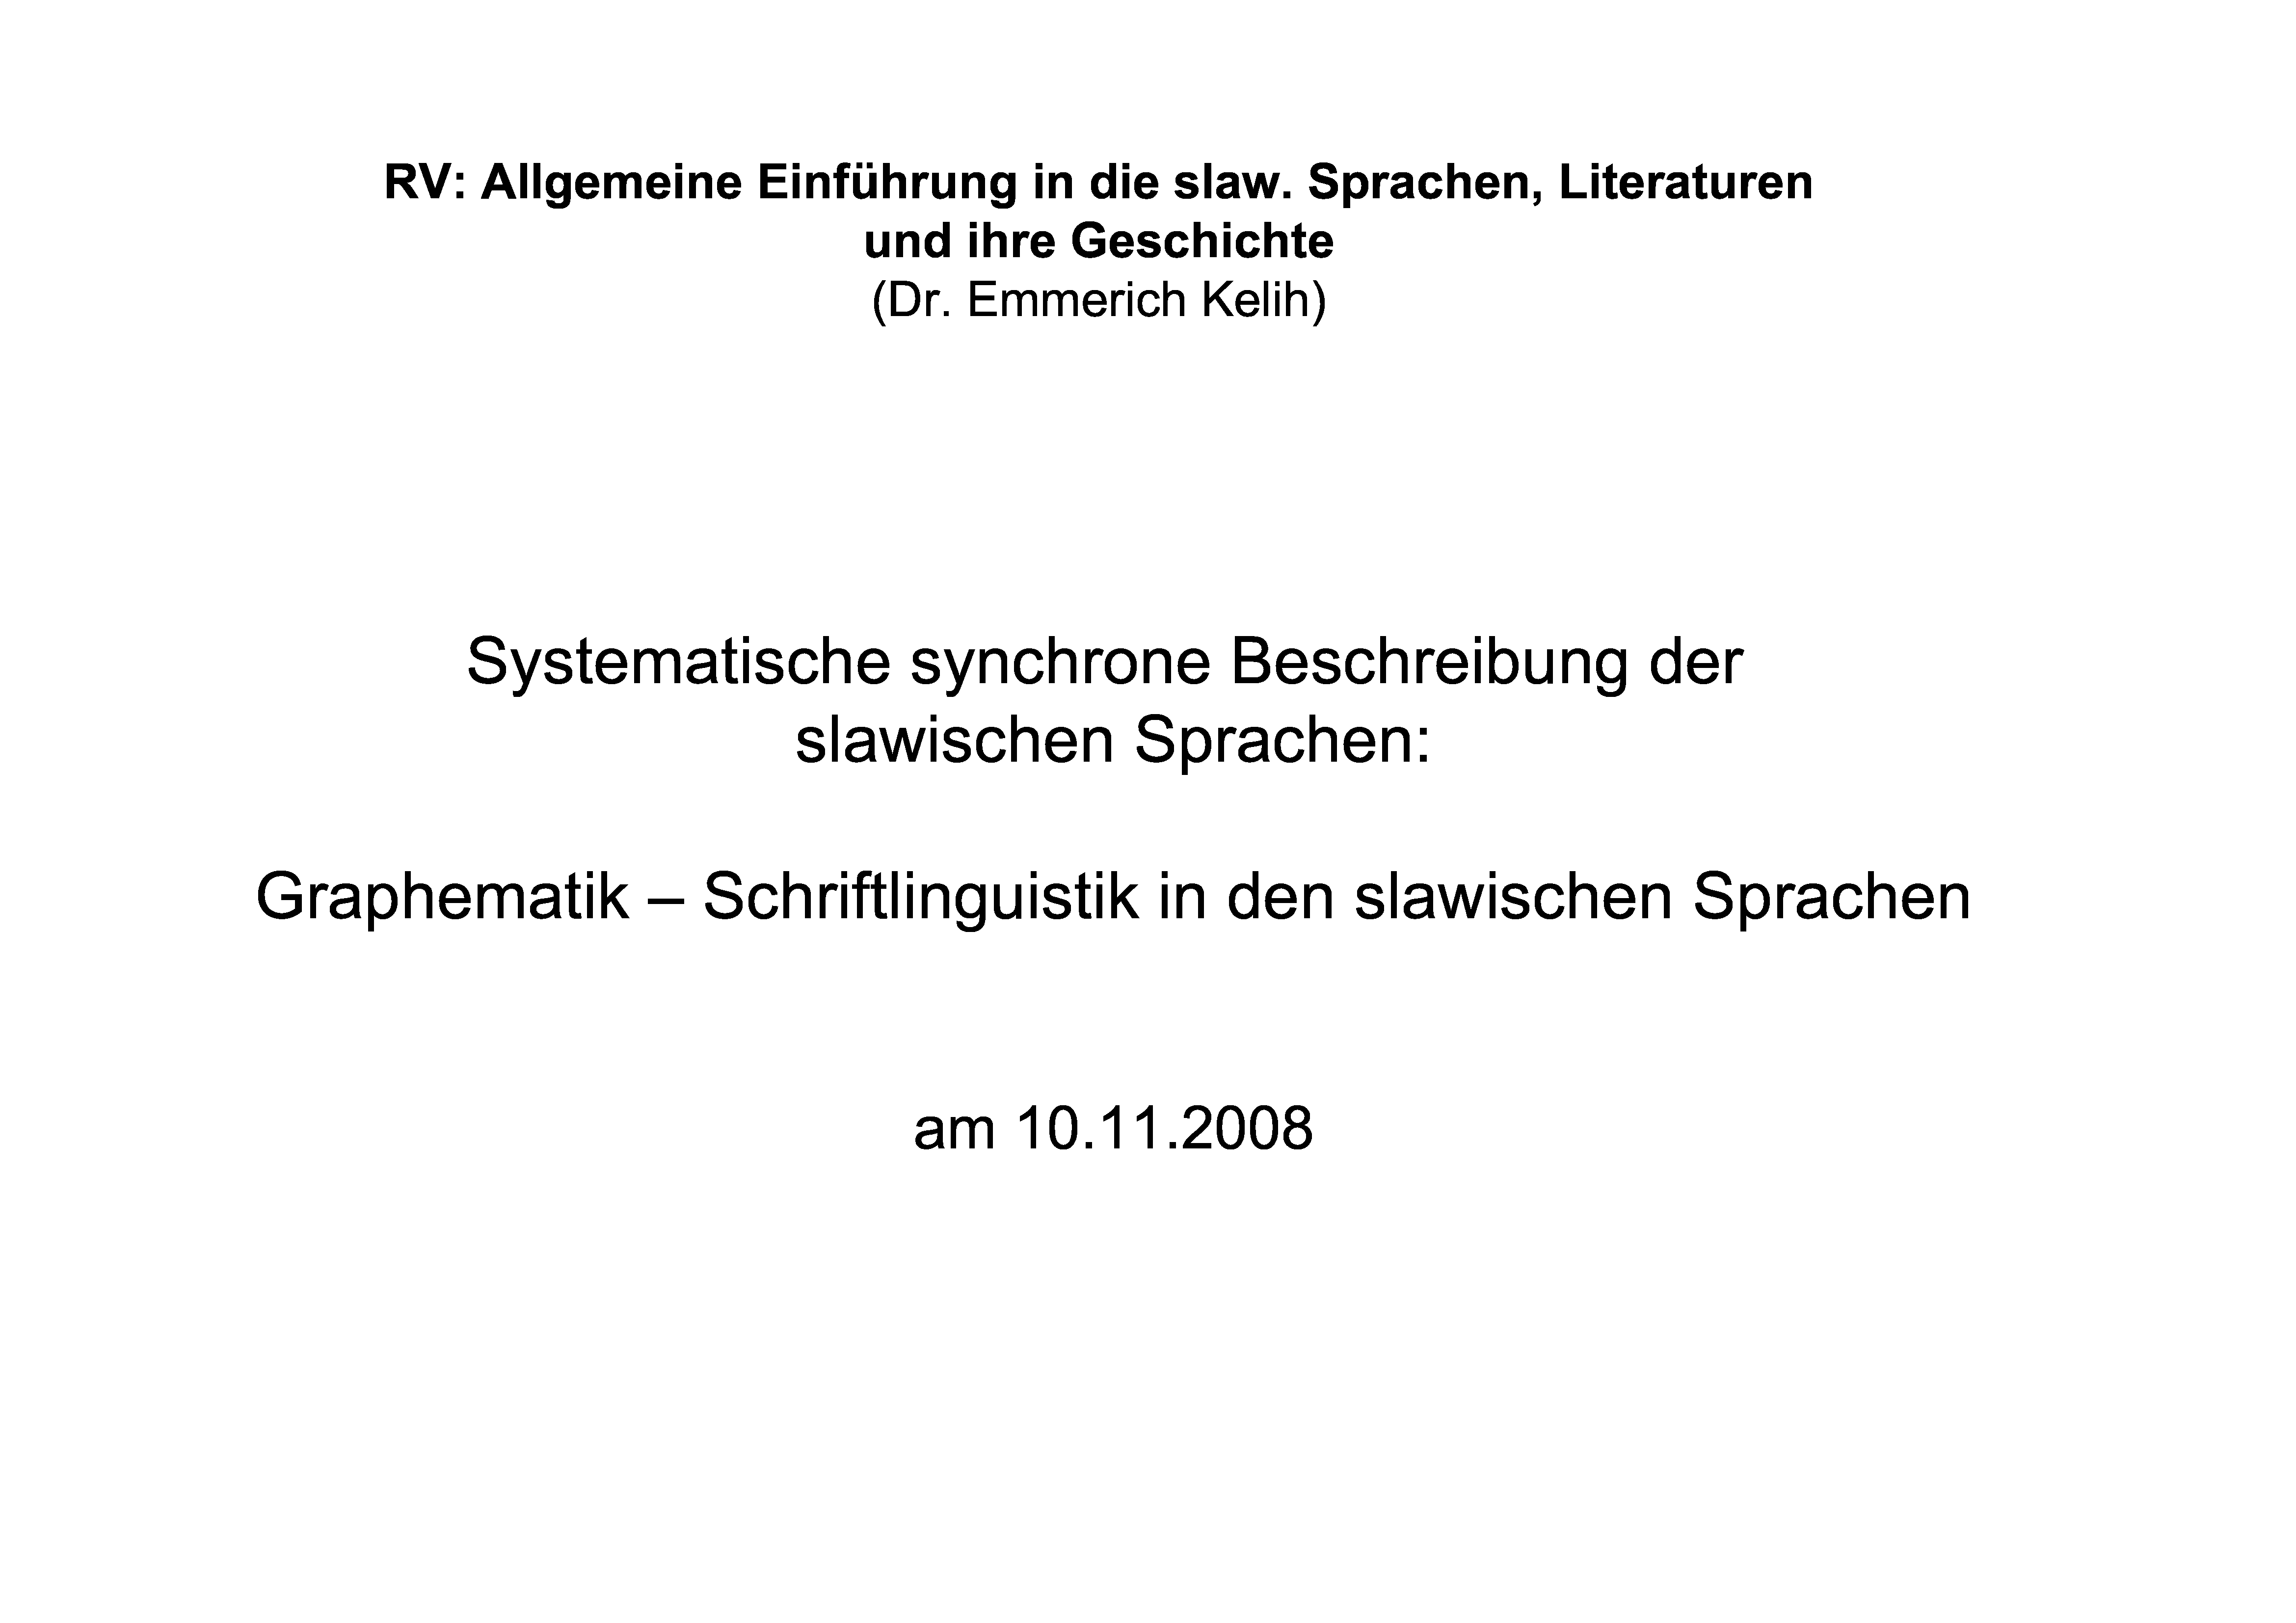 Systematische synchrone Beschreibung der slawischen Sprachen: Graphematik - Schriftlinguistik in den slawischen Sprachen